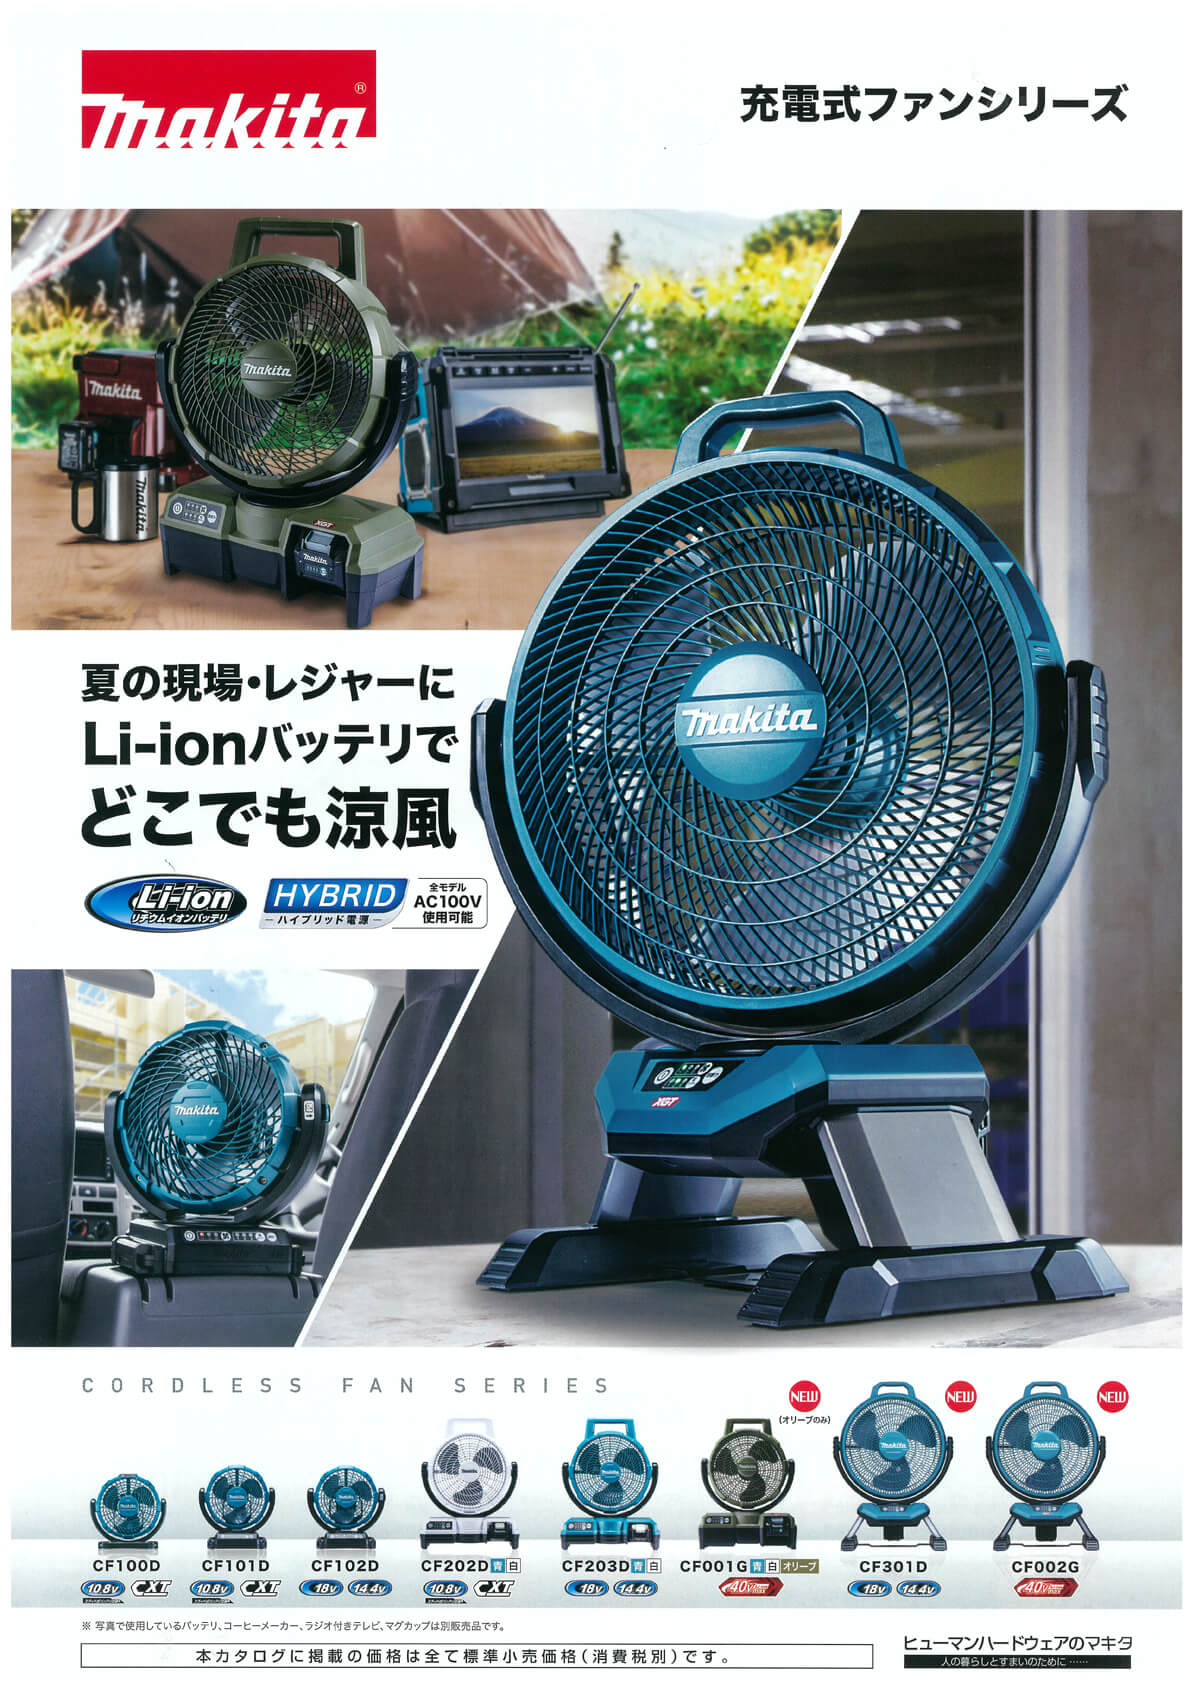 マキタ CF301DZ 充電式産業扇 ウエダ金物【公式サイト】